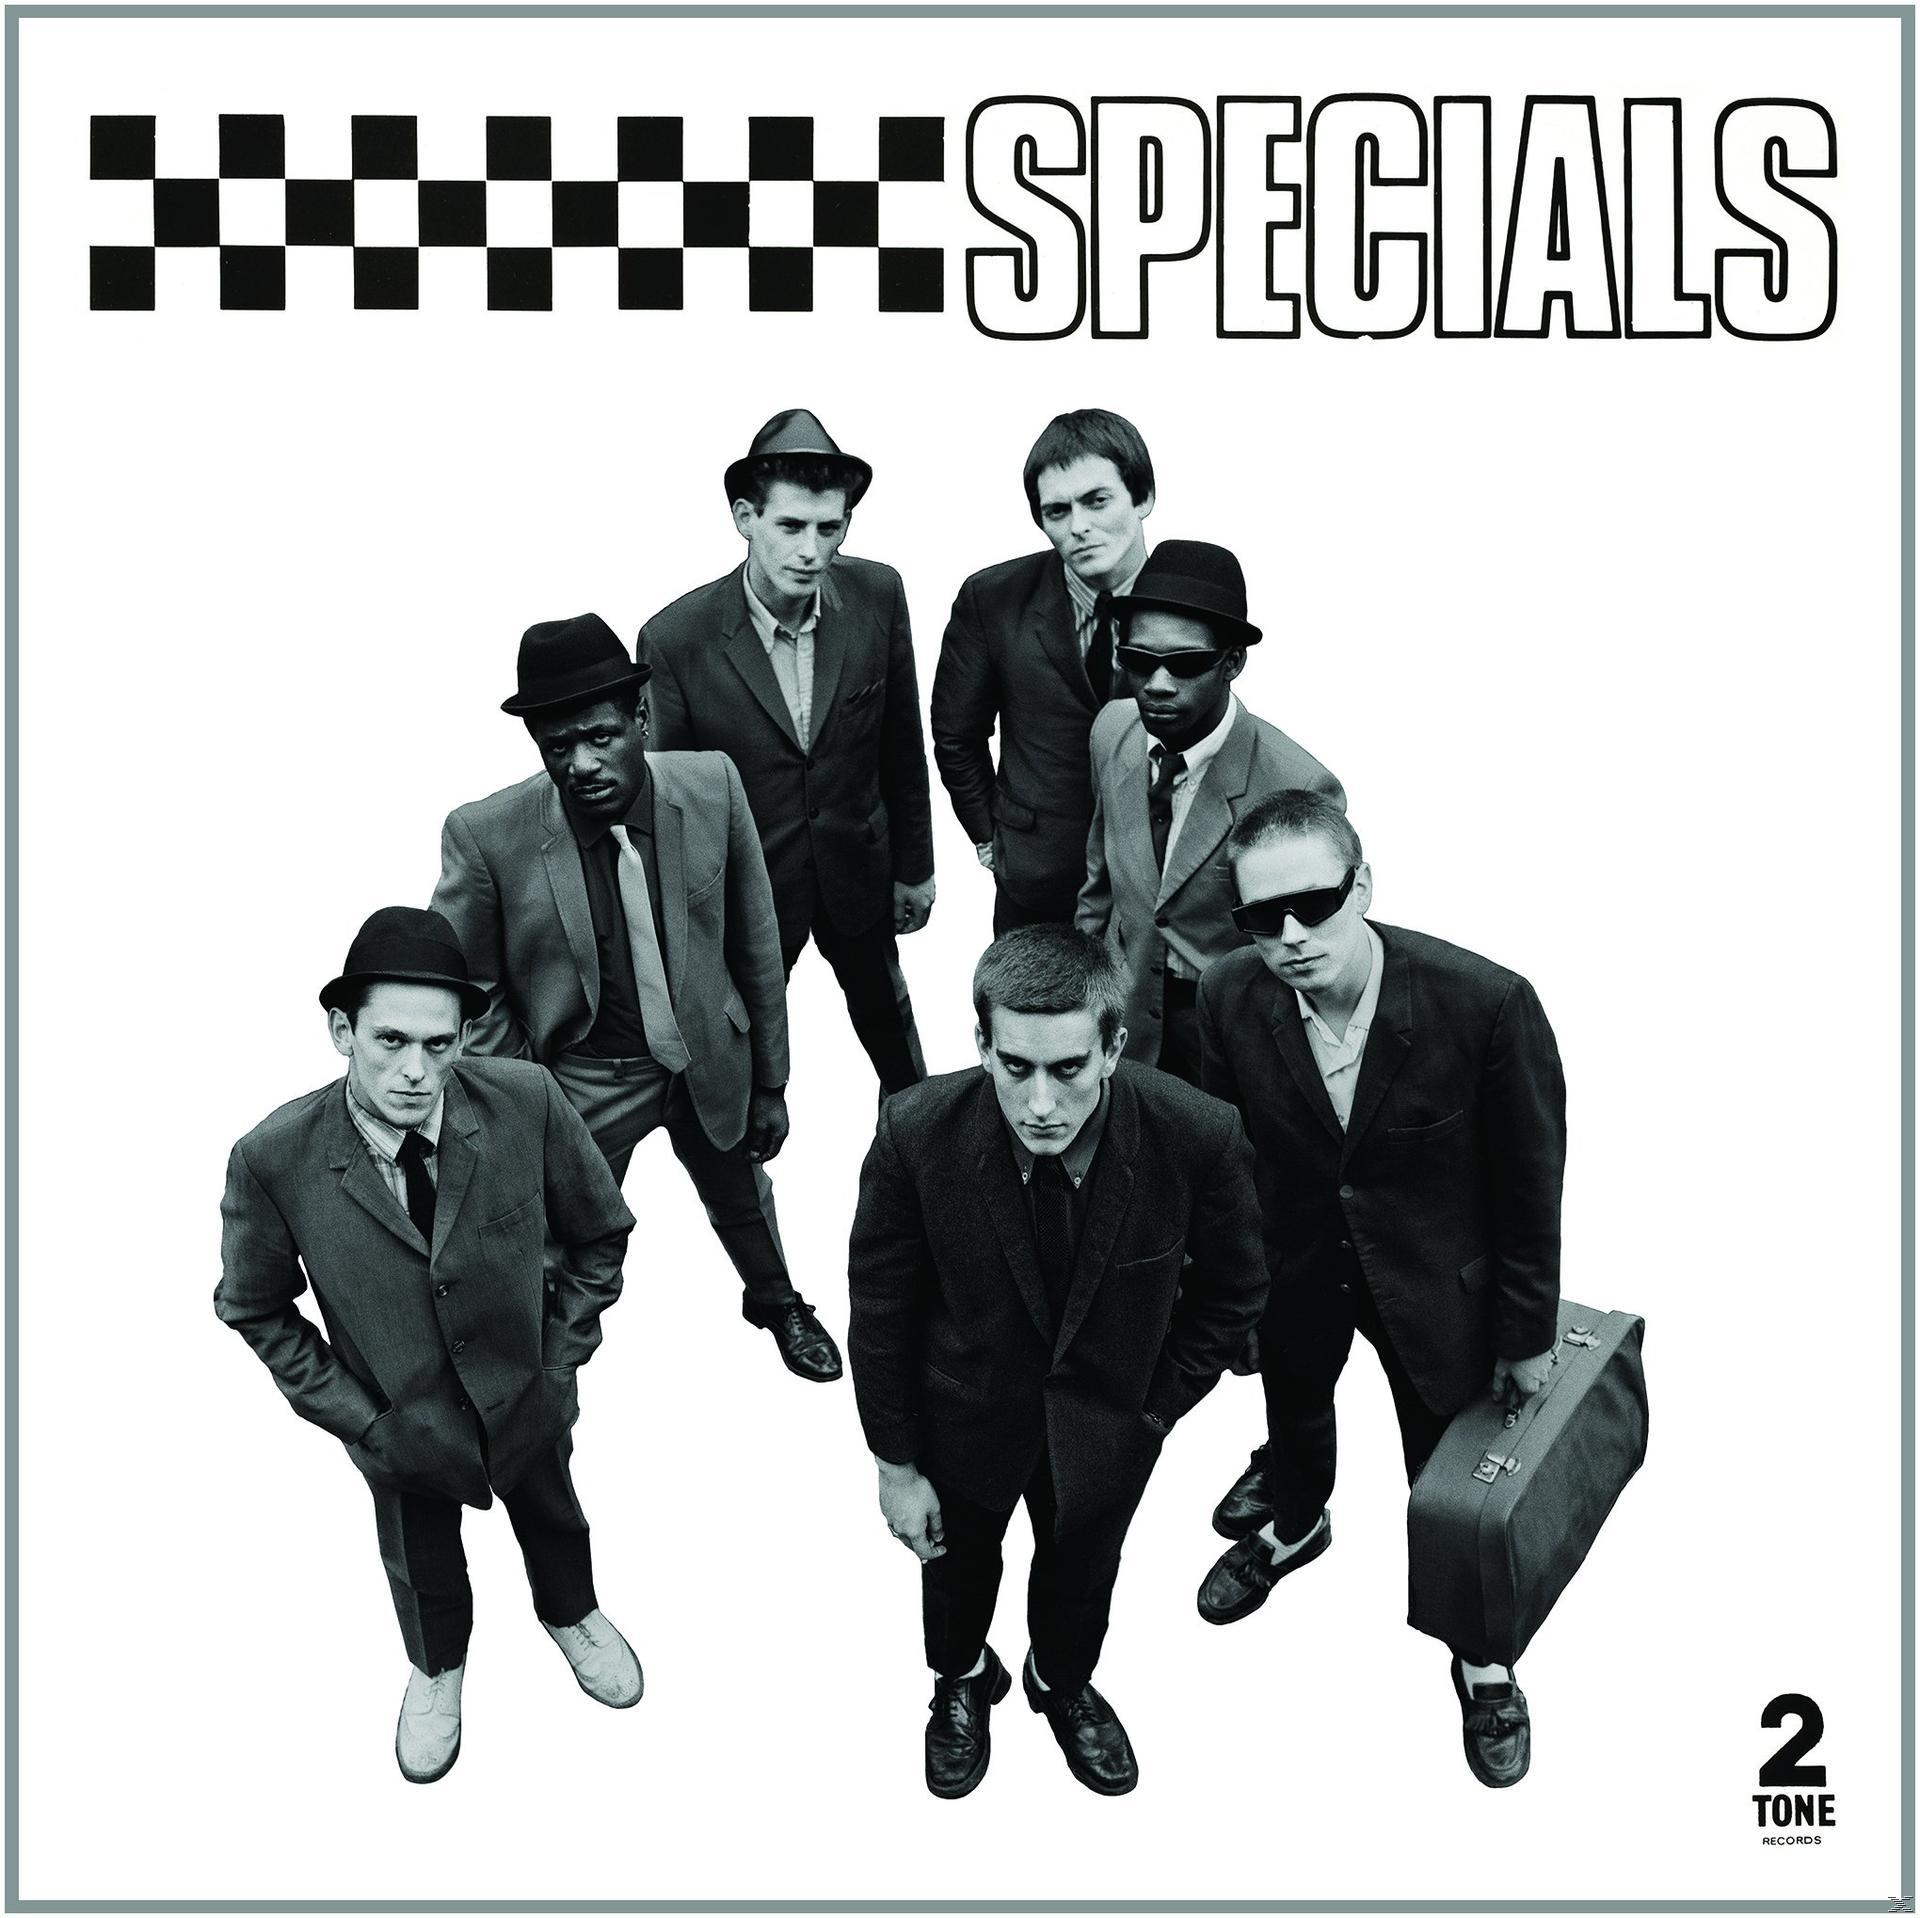 The Specials - Specials - Ediiton) (CD) (Special